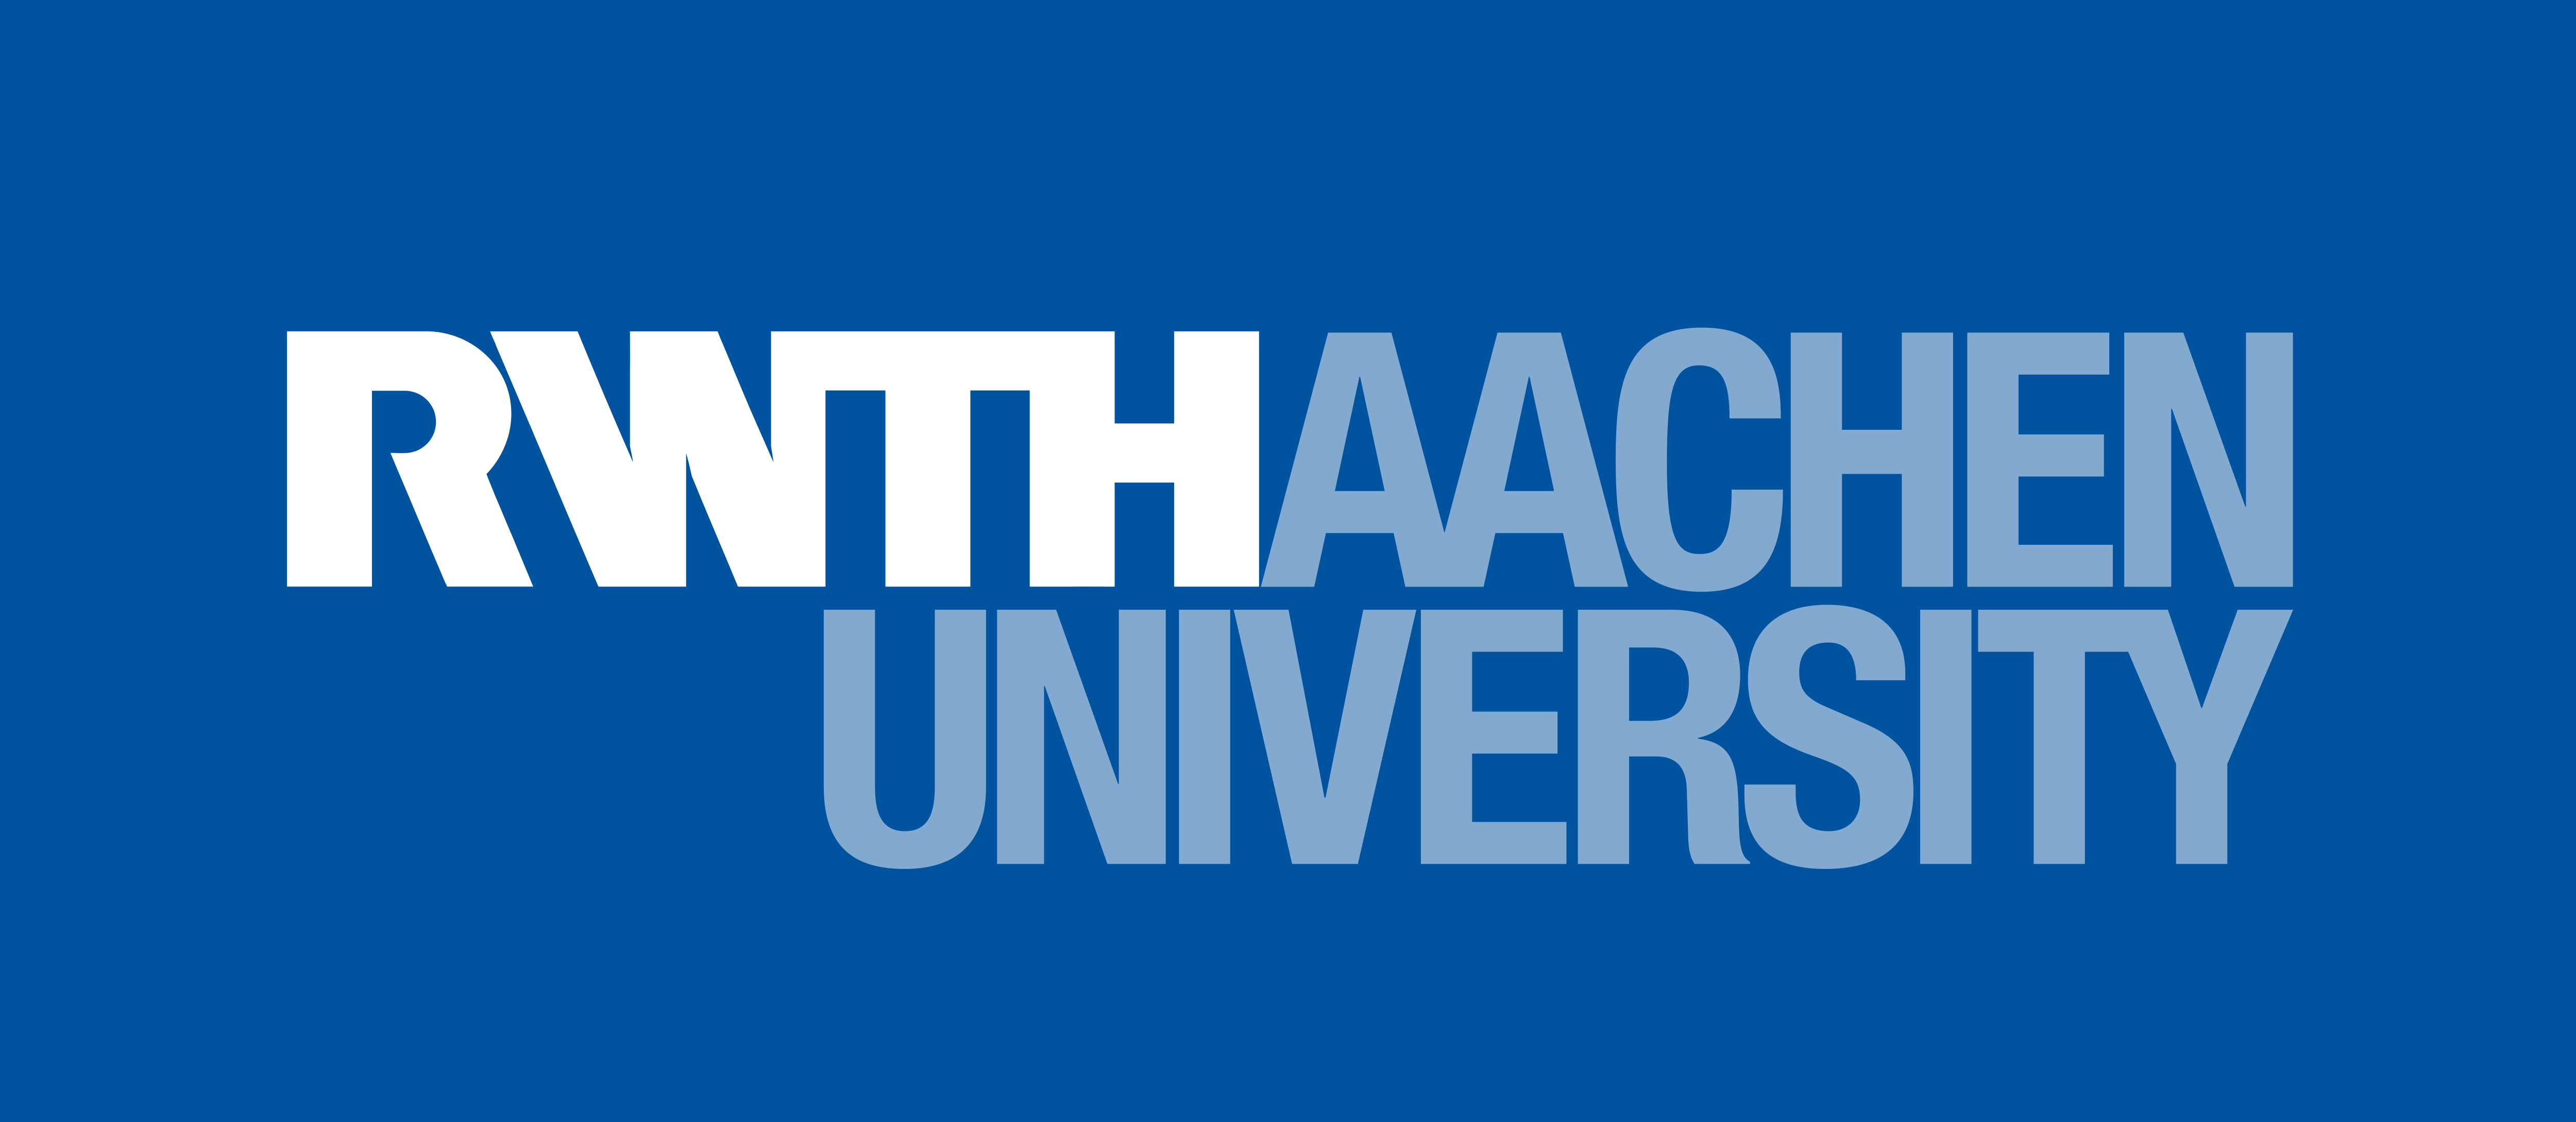 RWTH AACHEN University